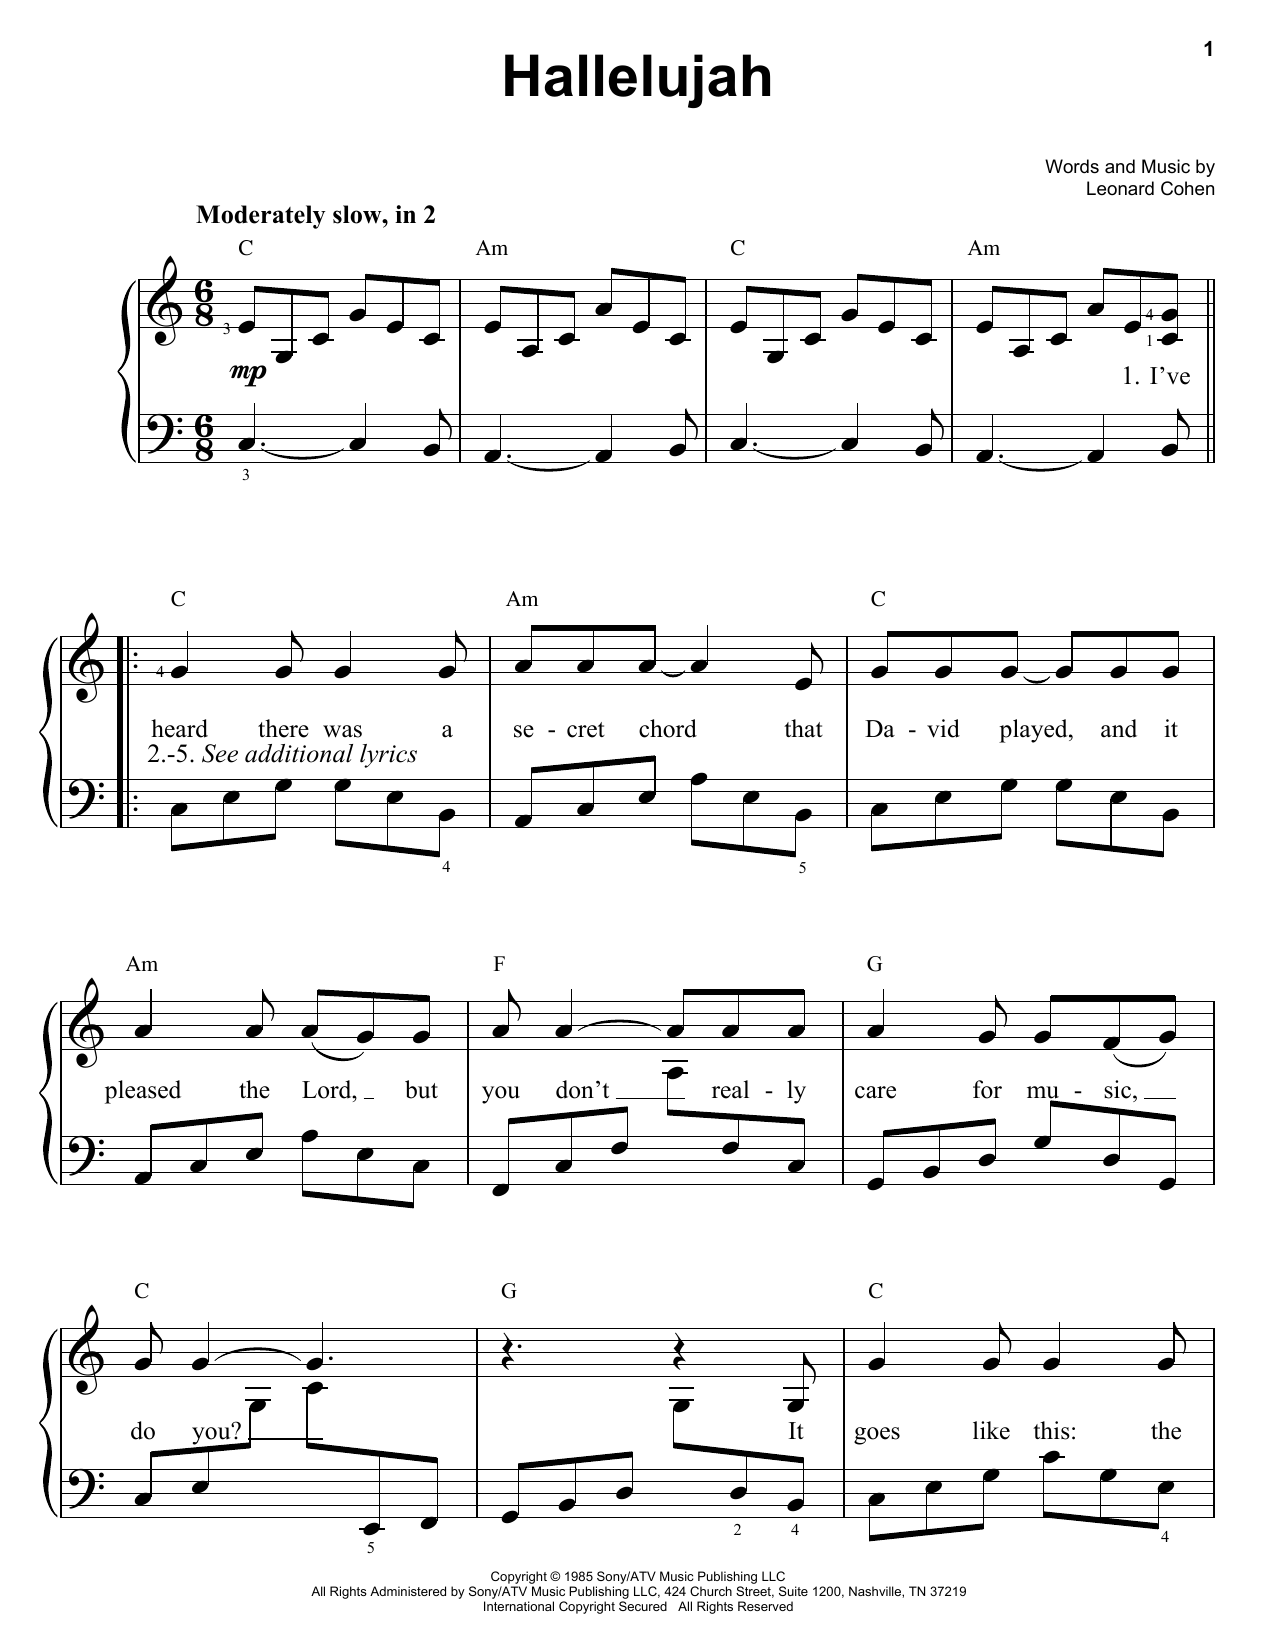 Leonard Cohen Hallelujah Sheet Music Notes & Chords for Ukulele - Download or Print PDF